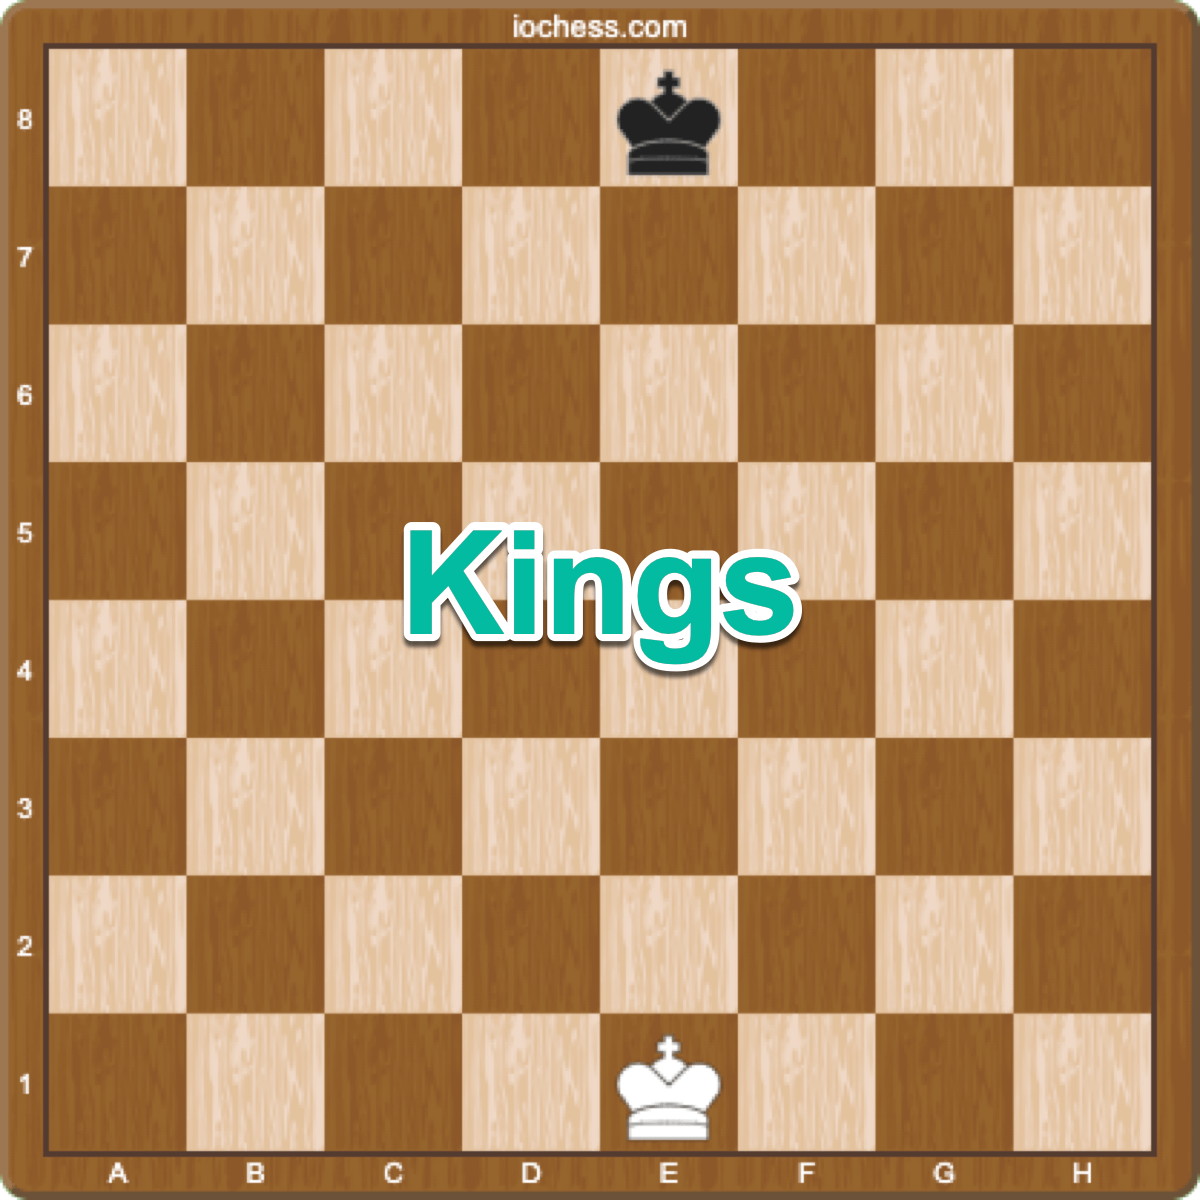 chess setup with king